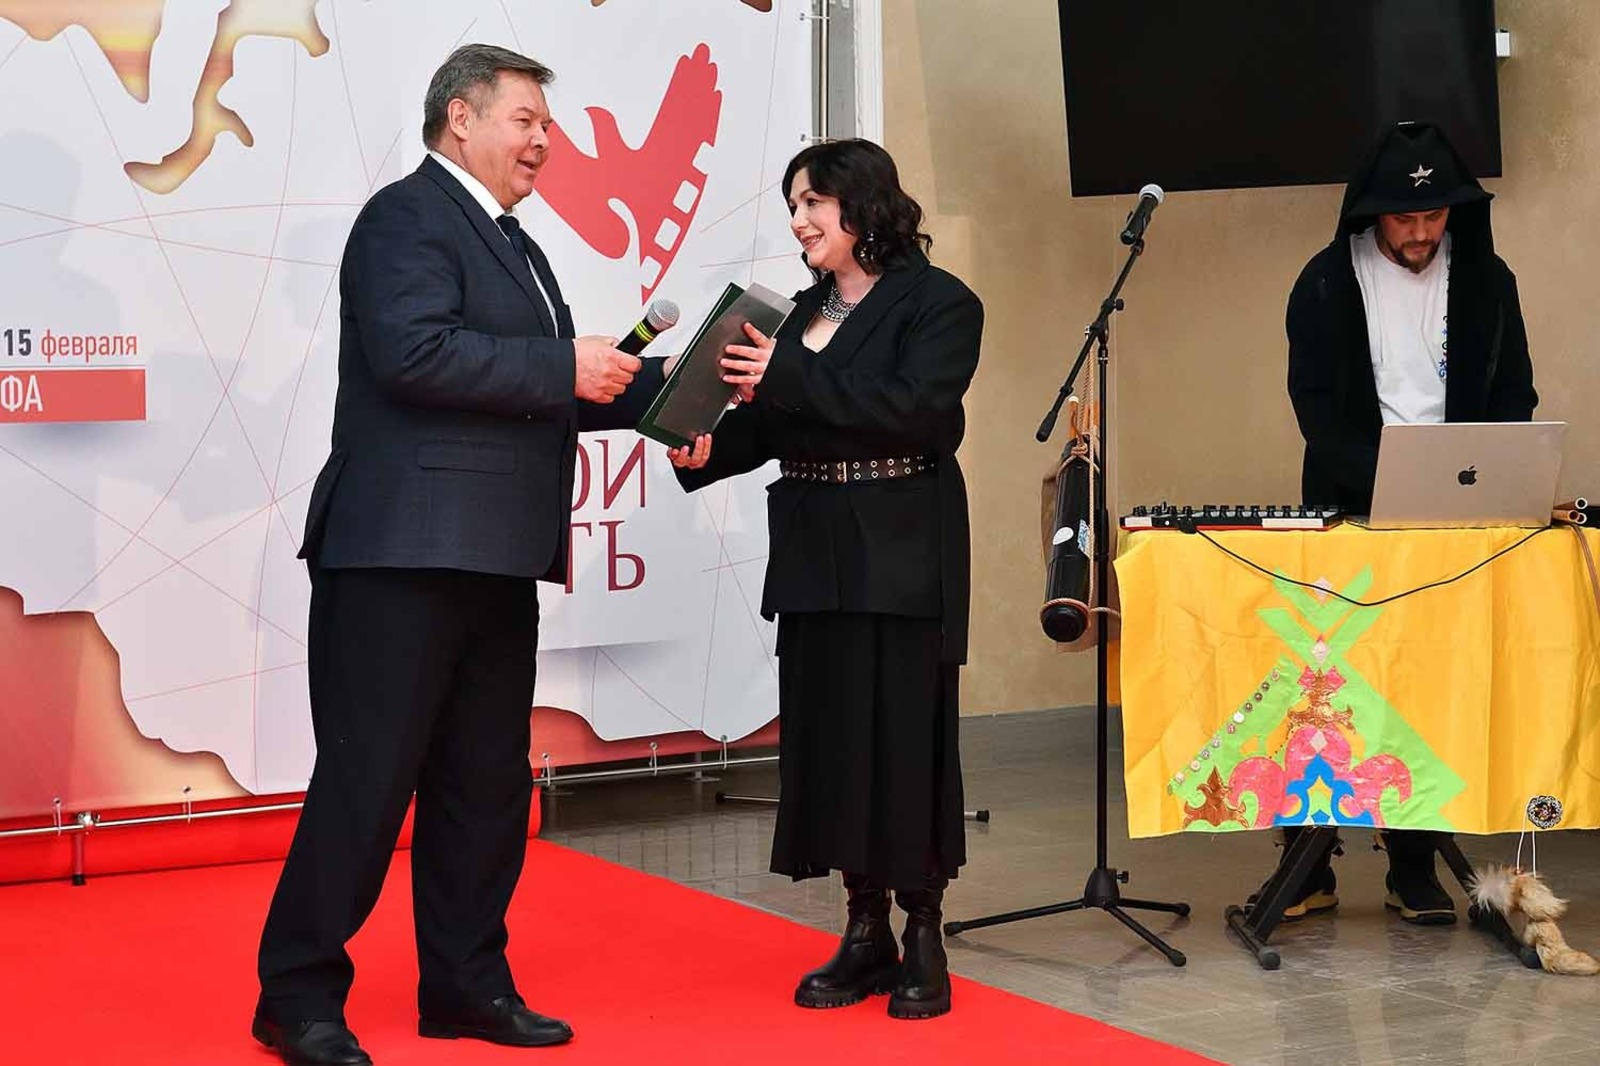 Альберт ЗАГИРОВ  Президент кинофестиваля Юлия Быба открывает форум.